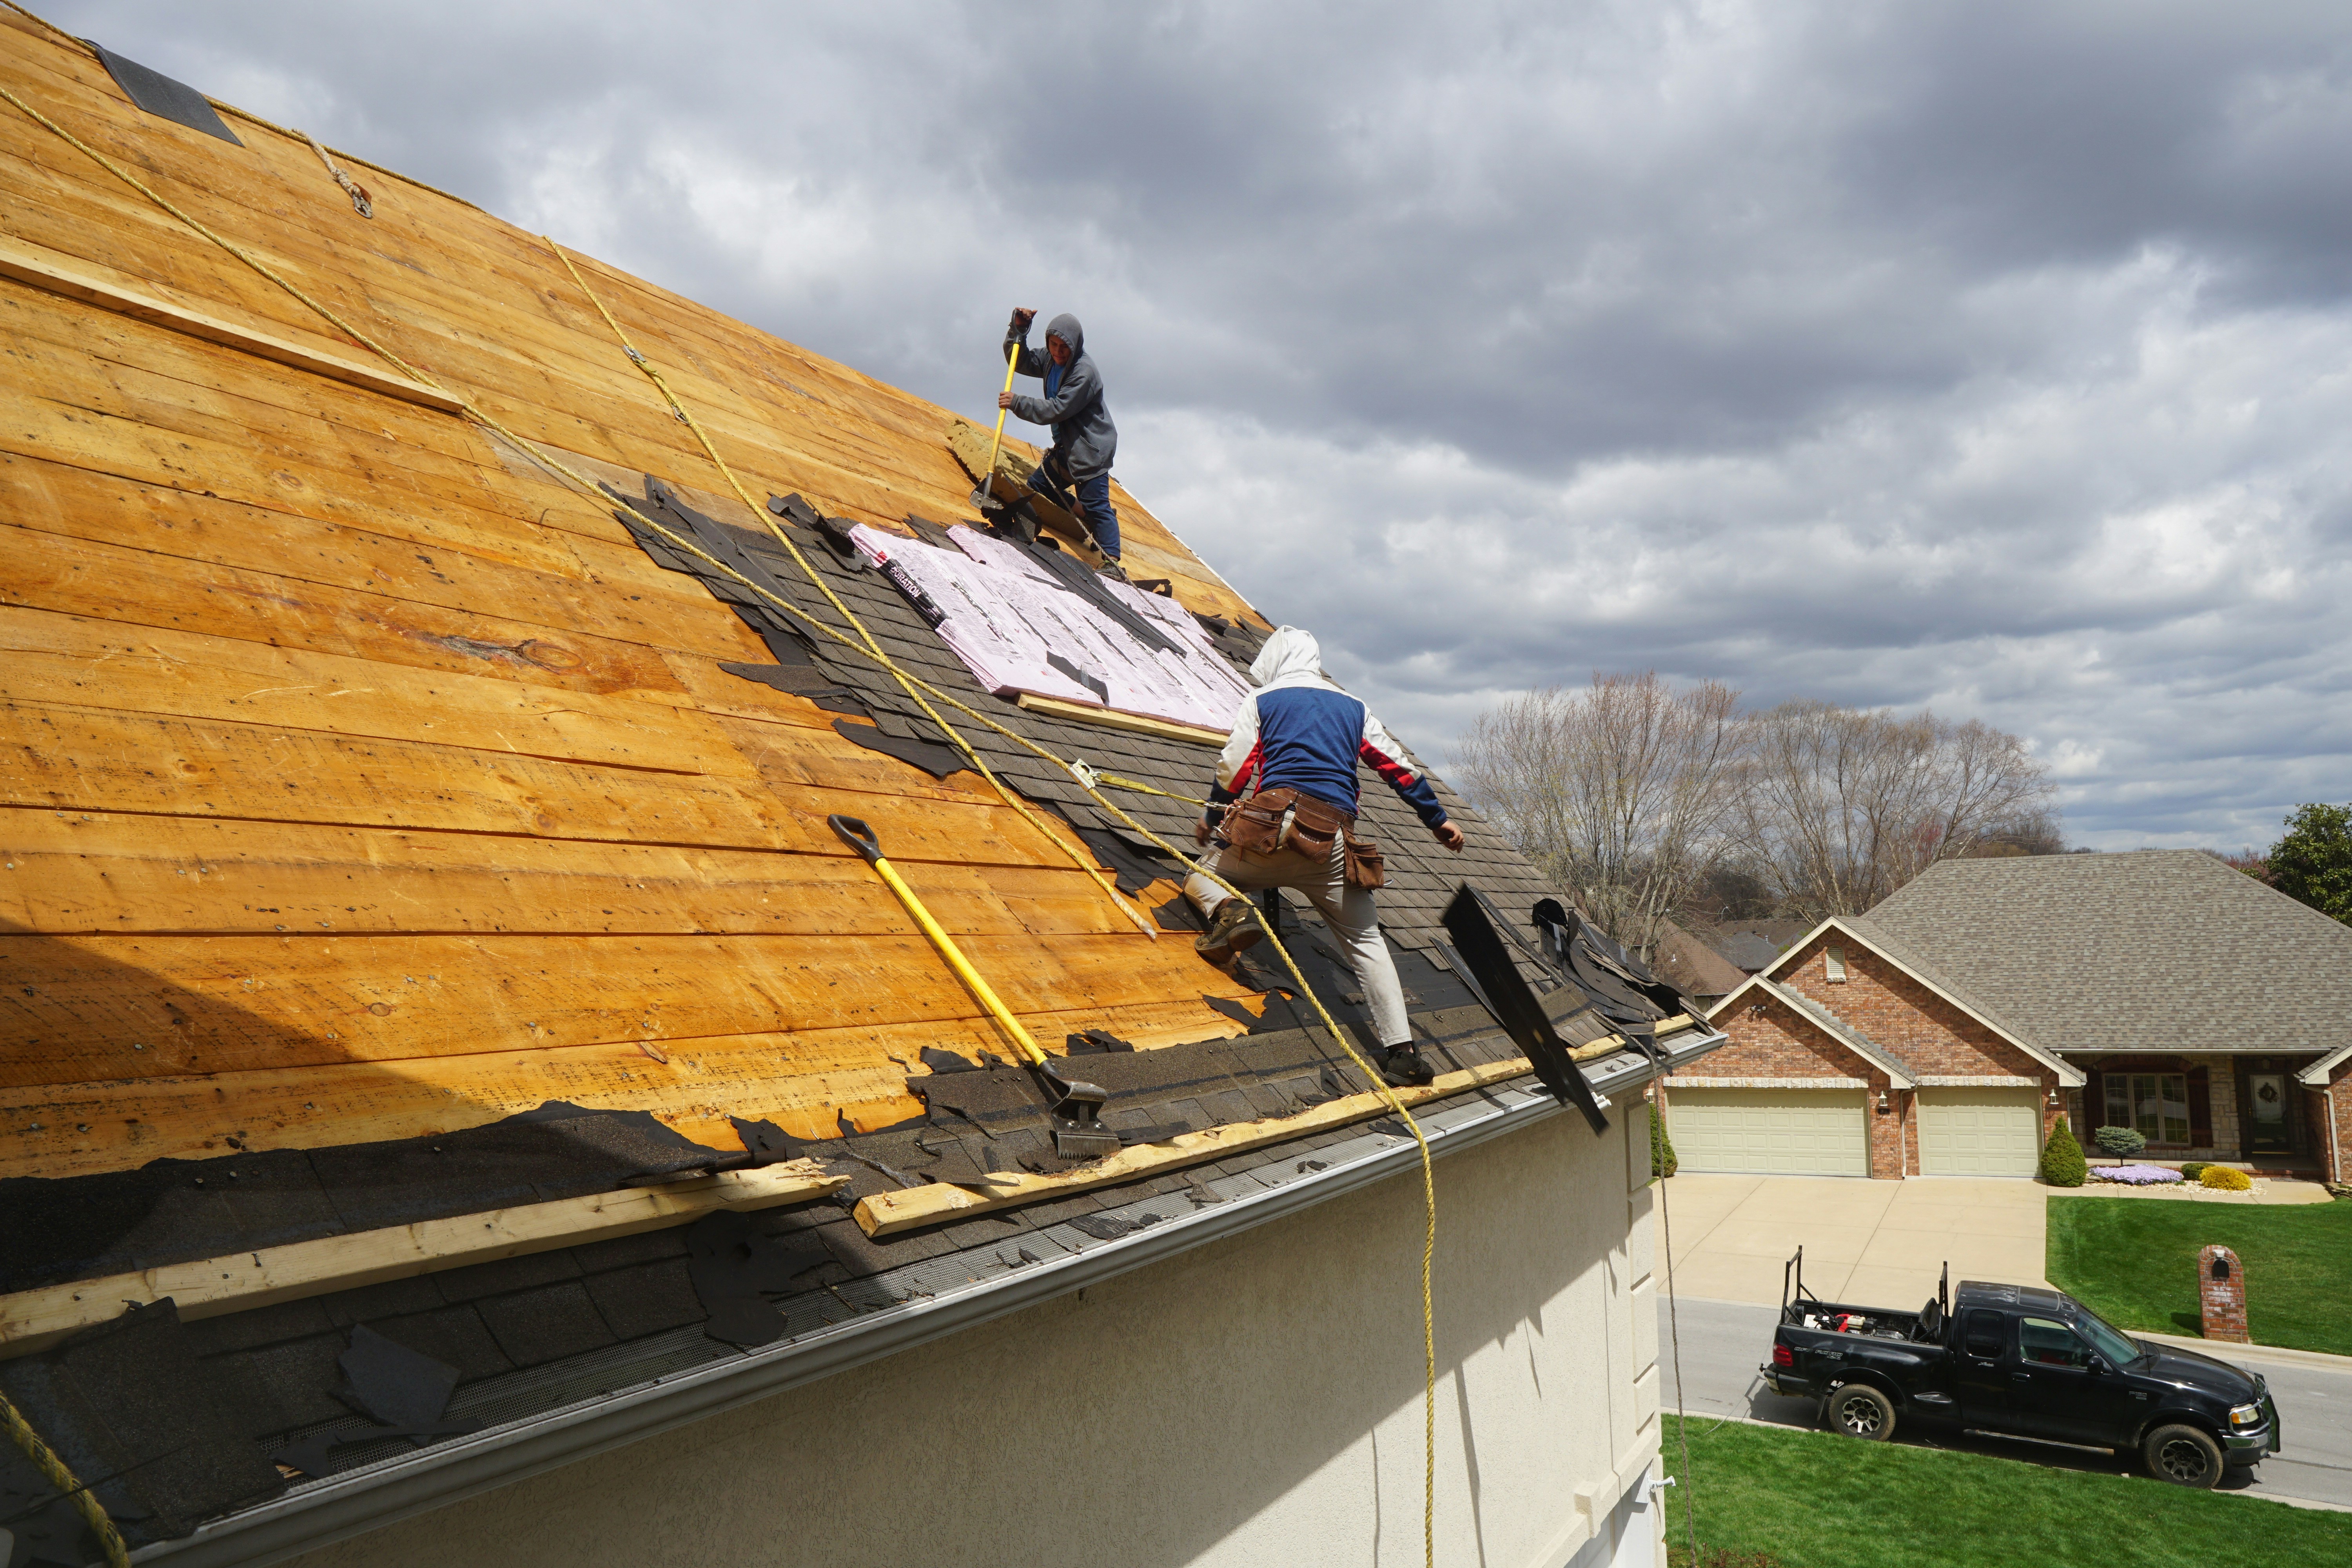 Montaż membrany dachowej - ochrona Twojego dachu na najwyższym poziomie